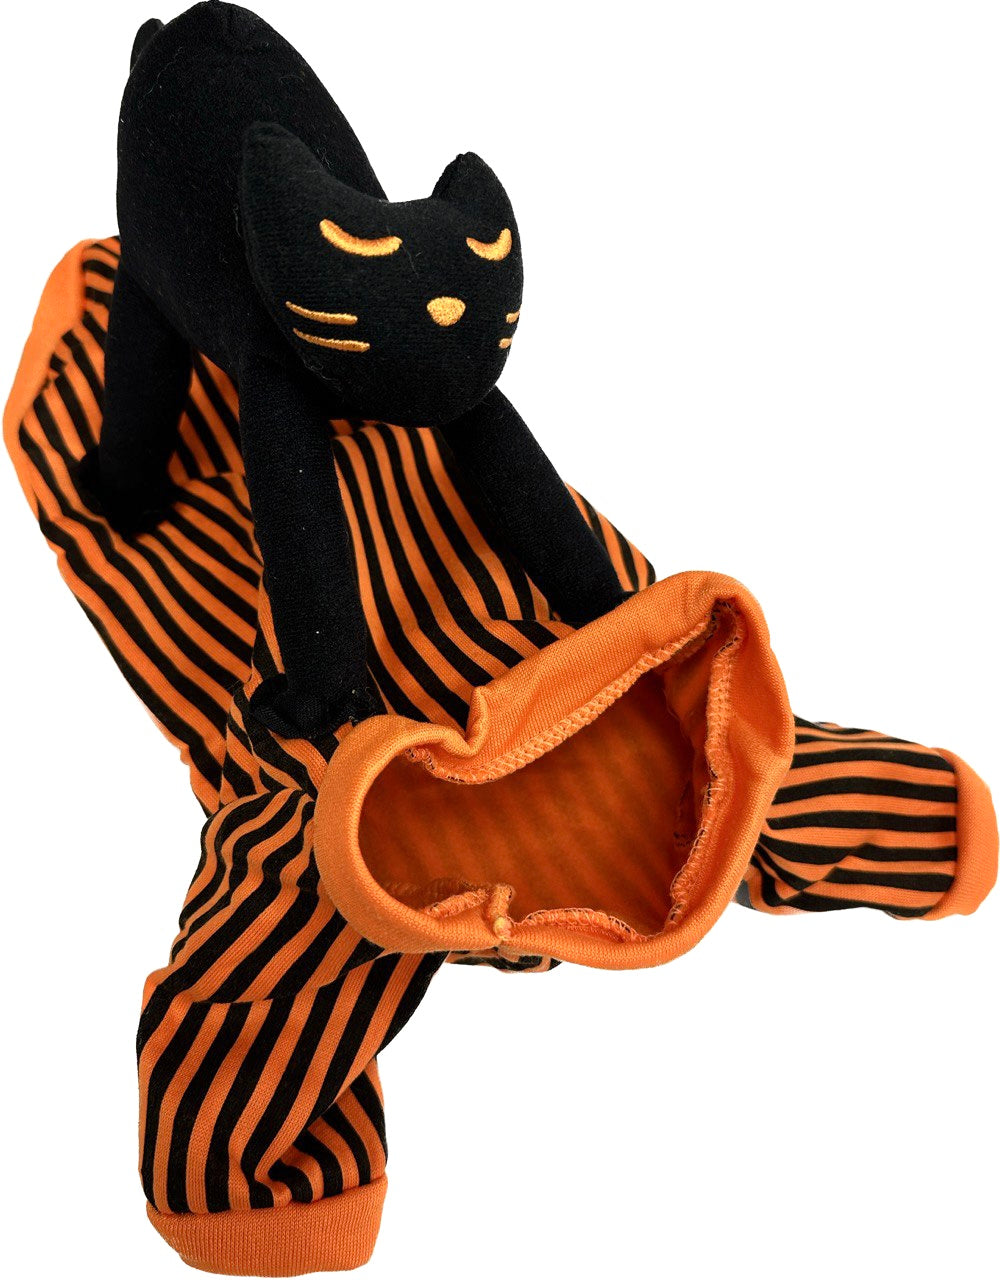 Black Cat Rider Costume